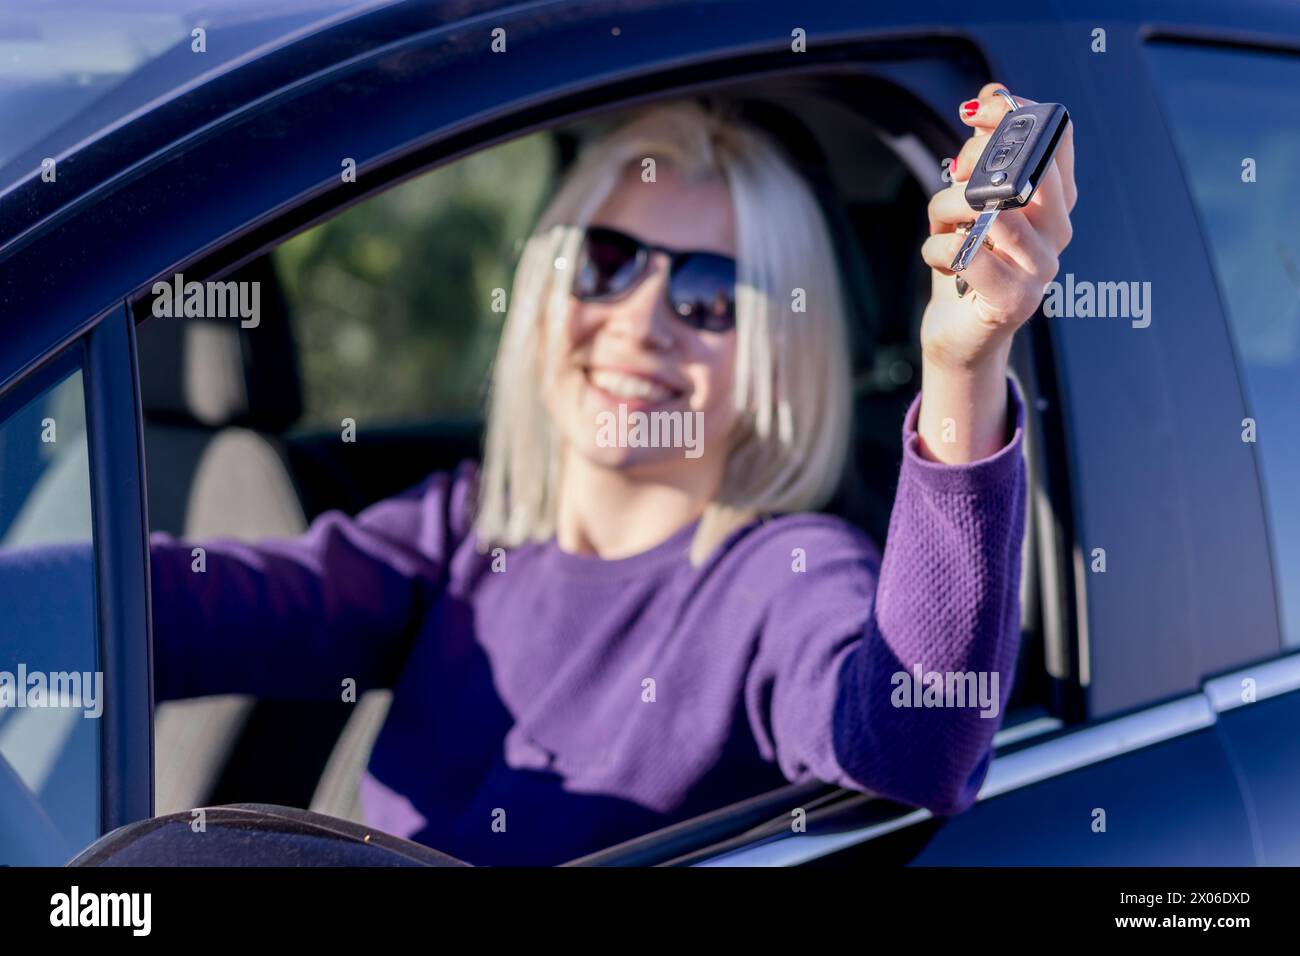 Femme blonde joyeuse dans un pull violet, avec des lunettes de soleil sur sa tête, affichant joyeusement ses clés de voiture, symbolisant une nouvelle propriété ou liberté Banque D'Images